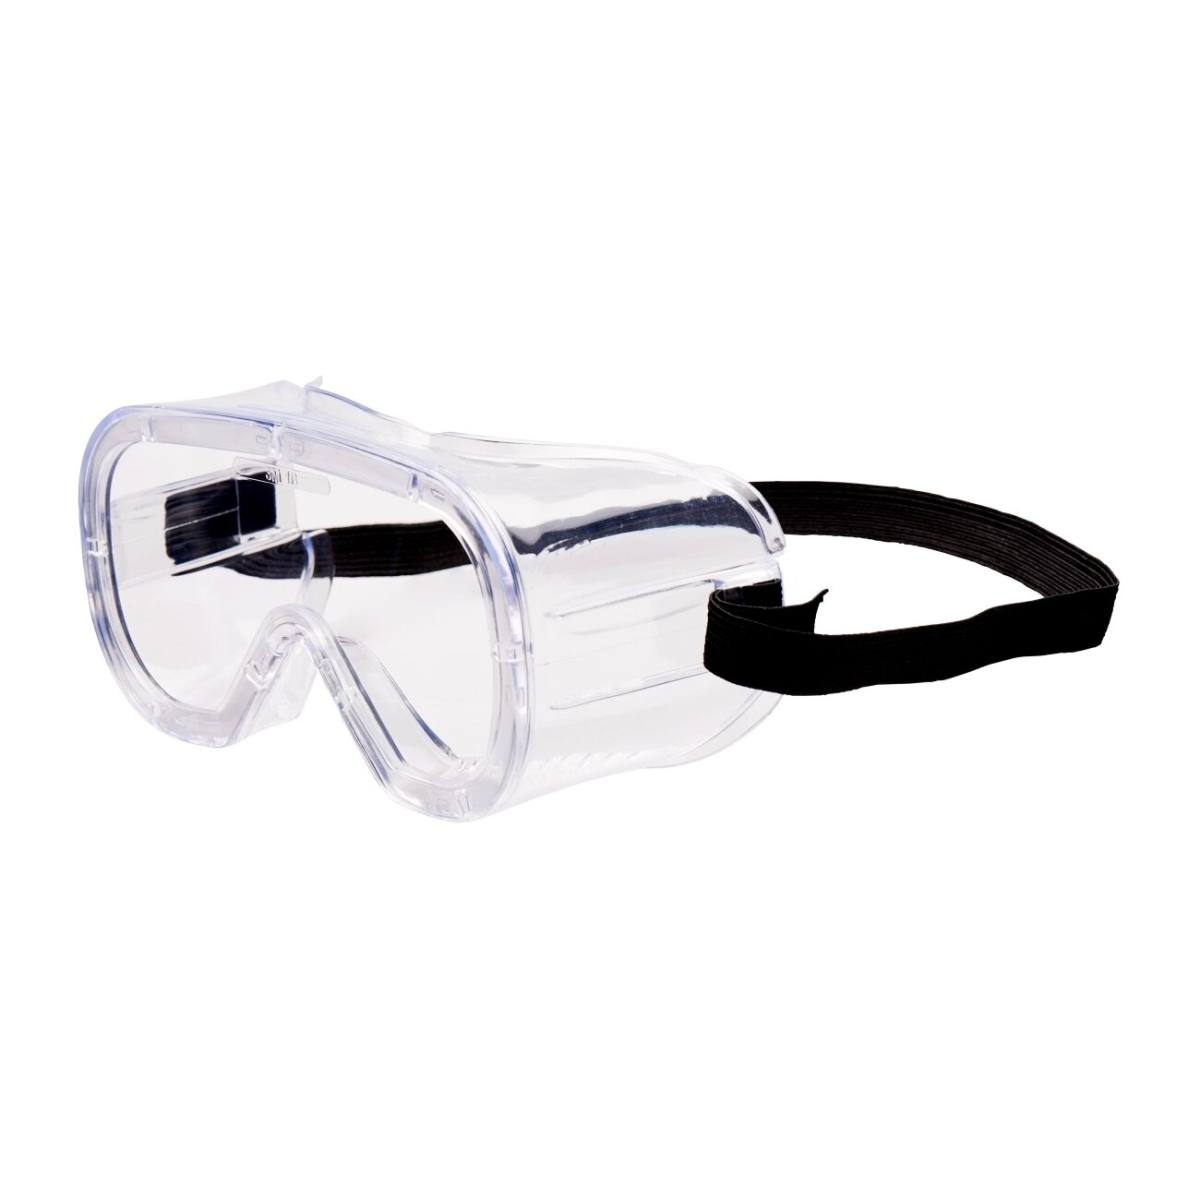 3M Gafas de visión completa Presupuesto Bud48AF, PC, transparente, ventilación indirecta